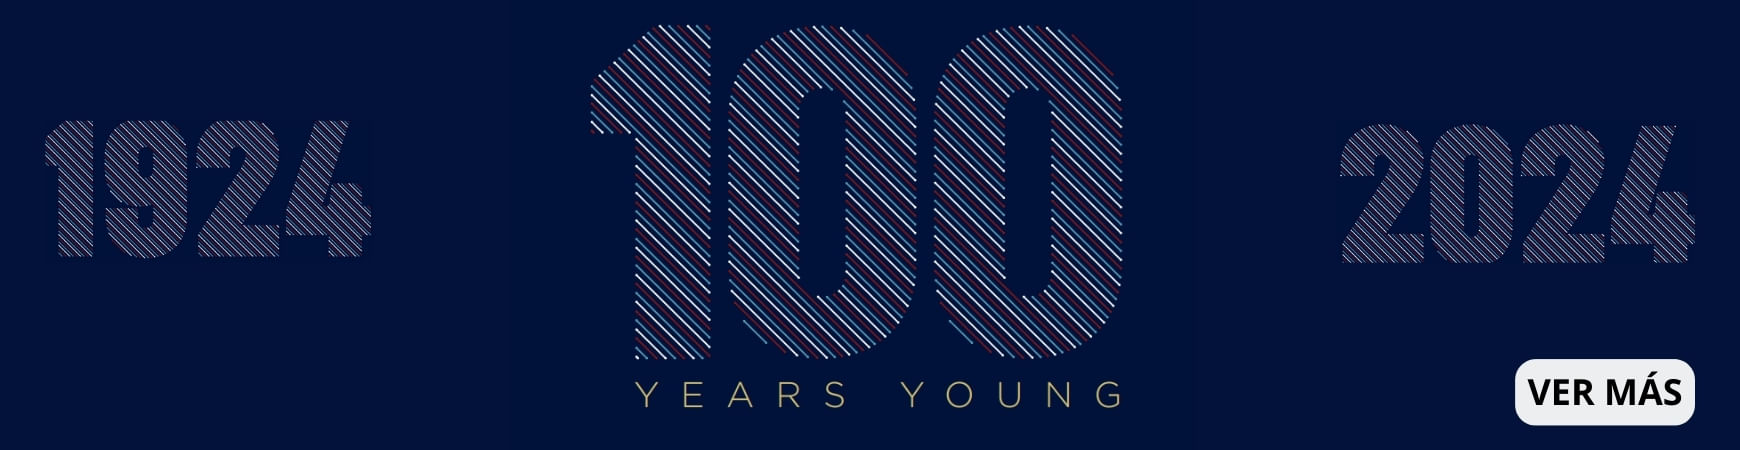 100 añoa